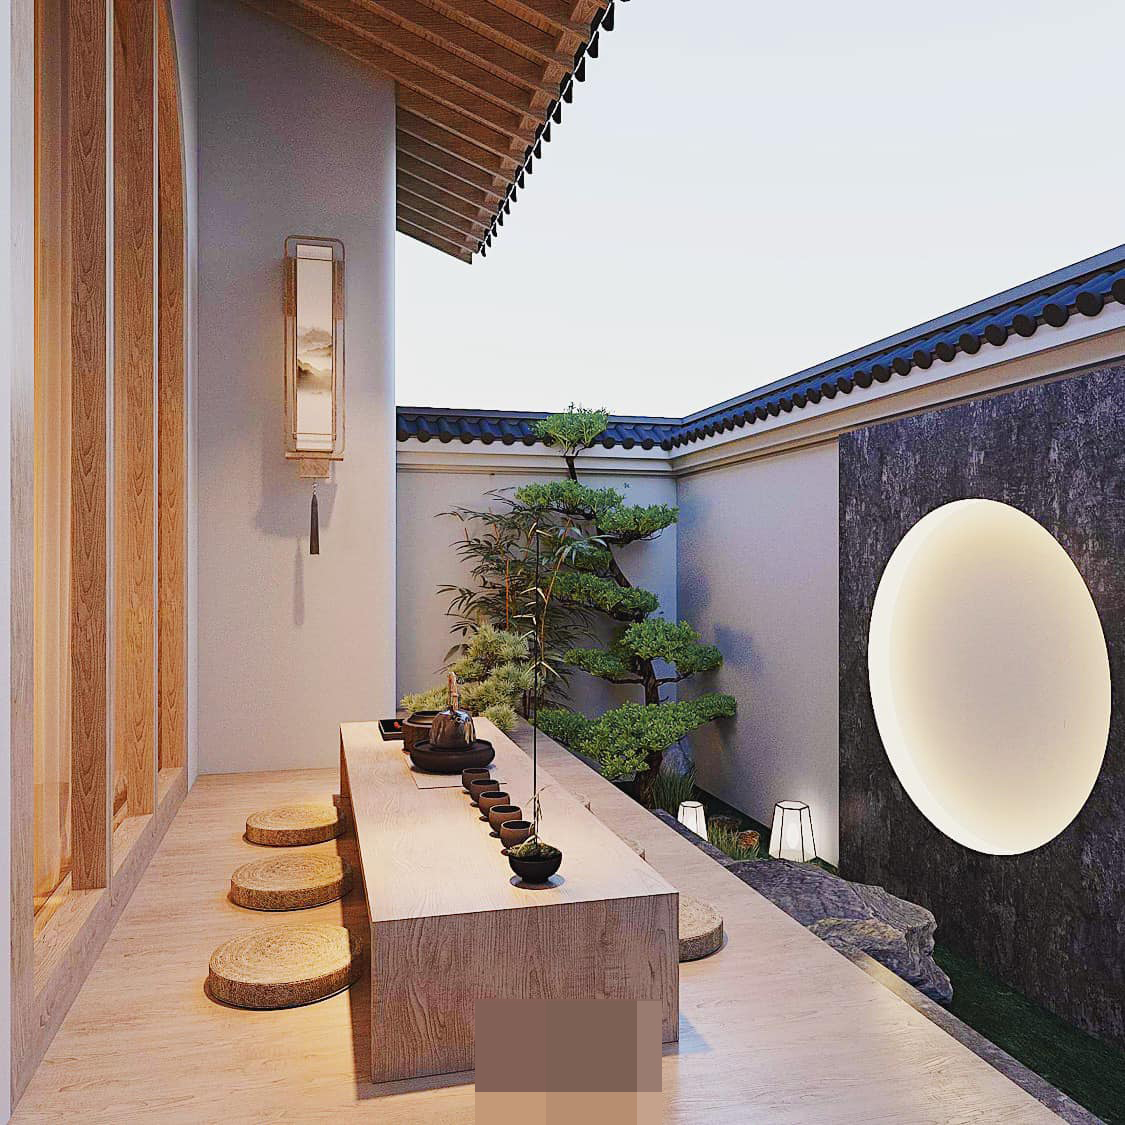 Thiết kế nhà có vườn cây trong nhà kiểu Trung Hoa 